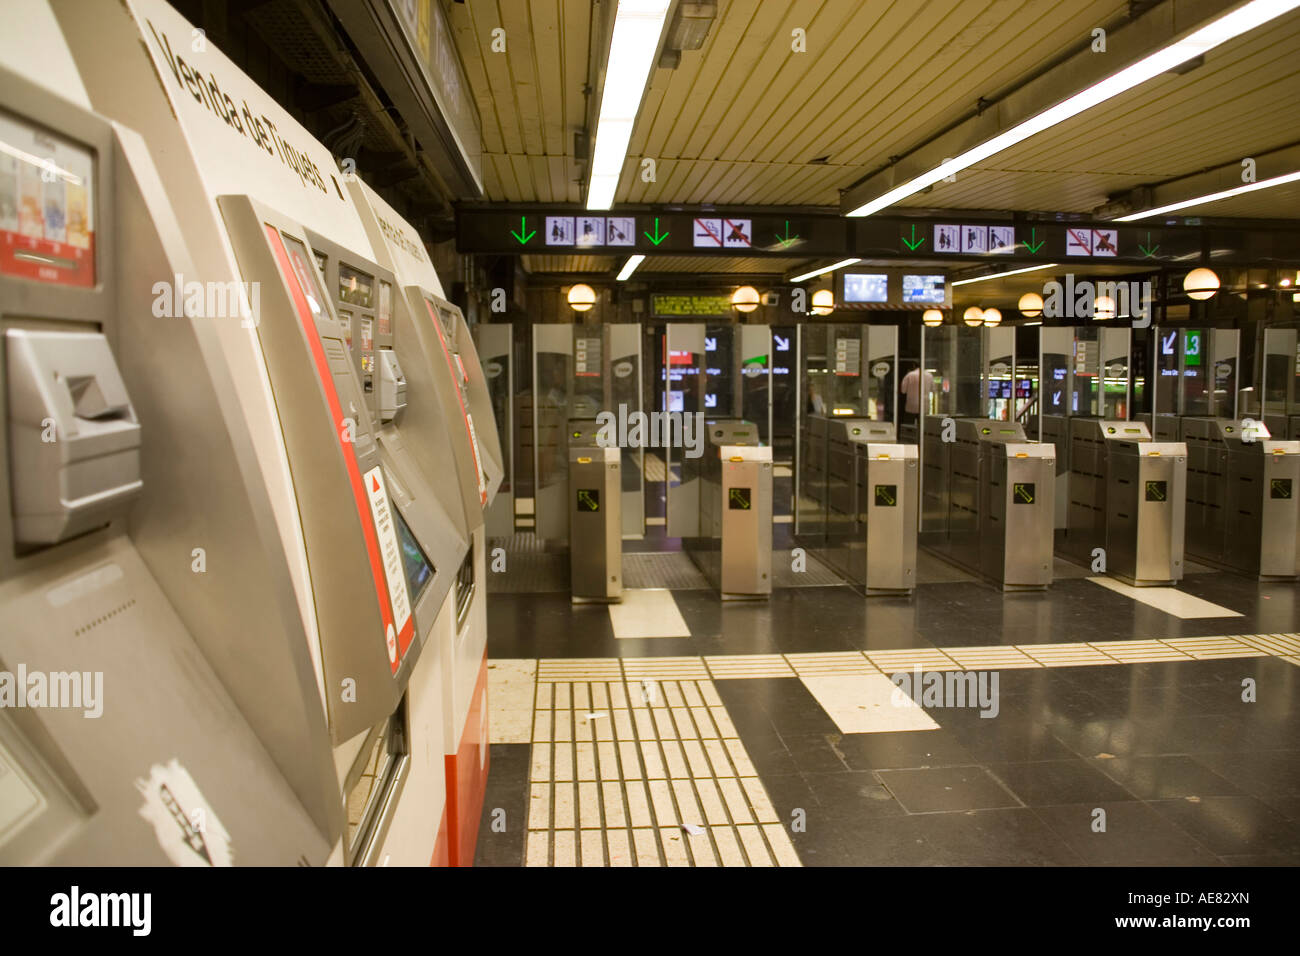 Le métro de Barcelone. Distributeurs de billets et tourniquets Banque D'Images